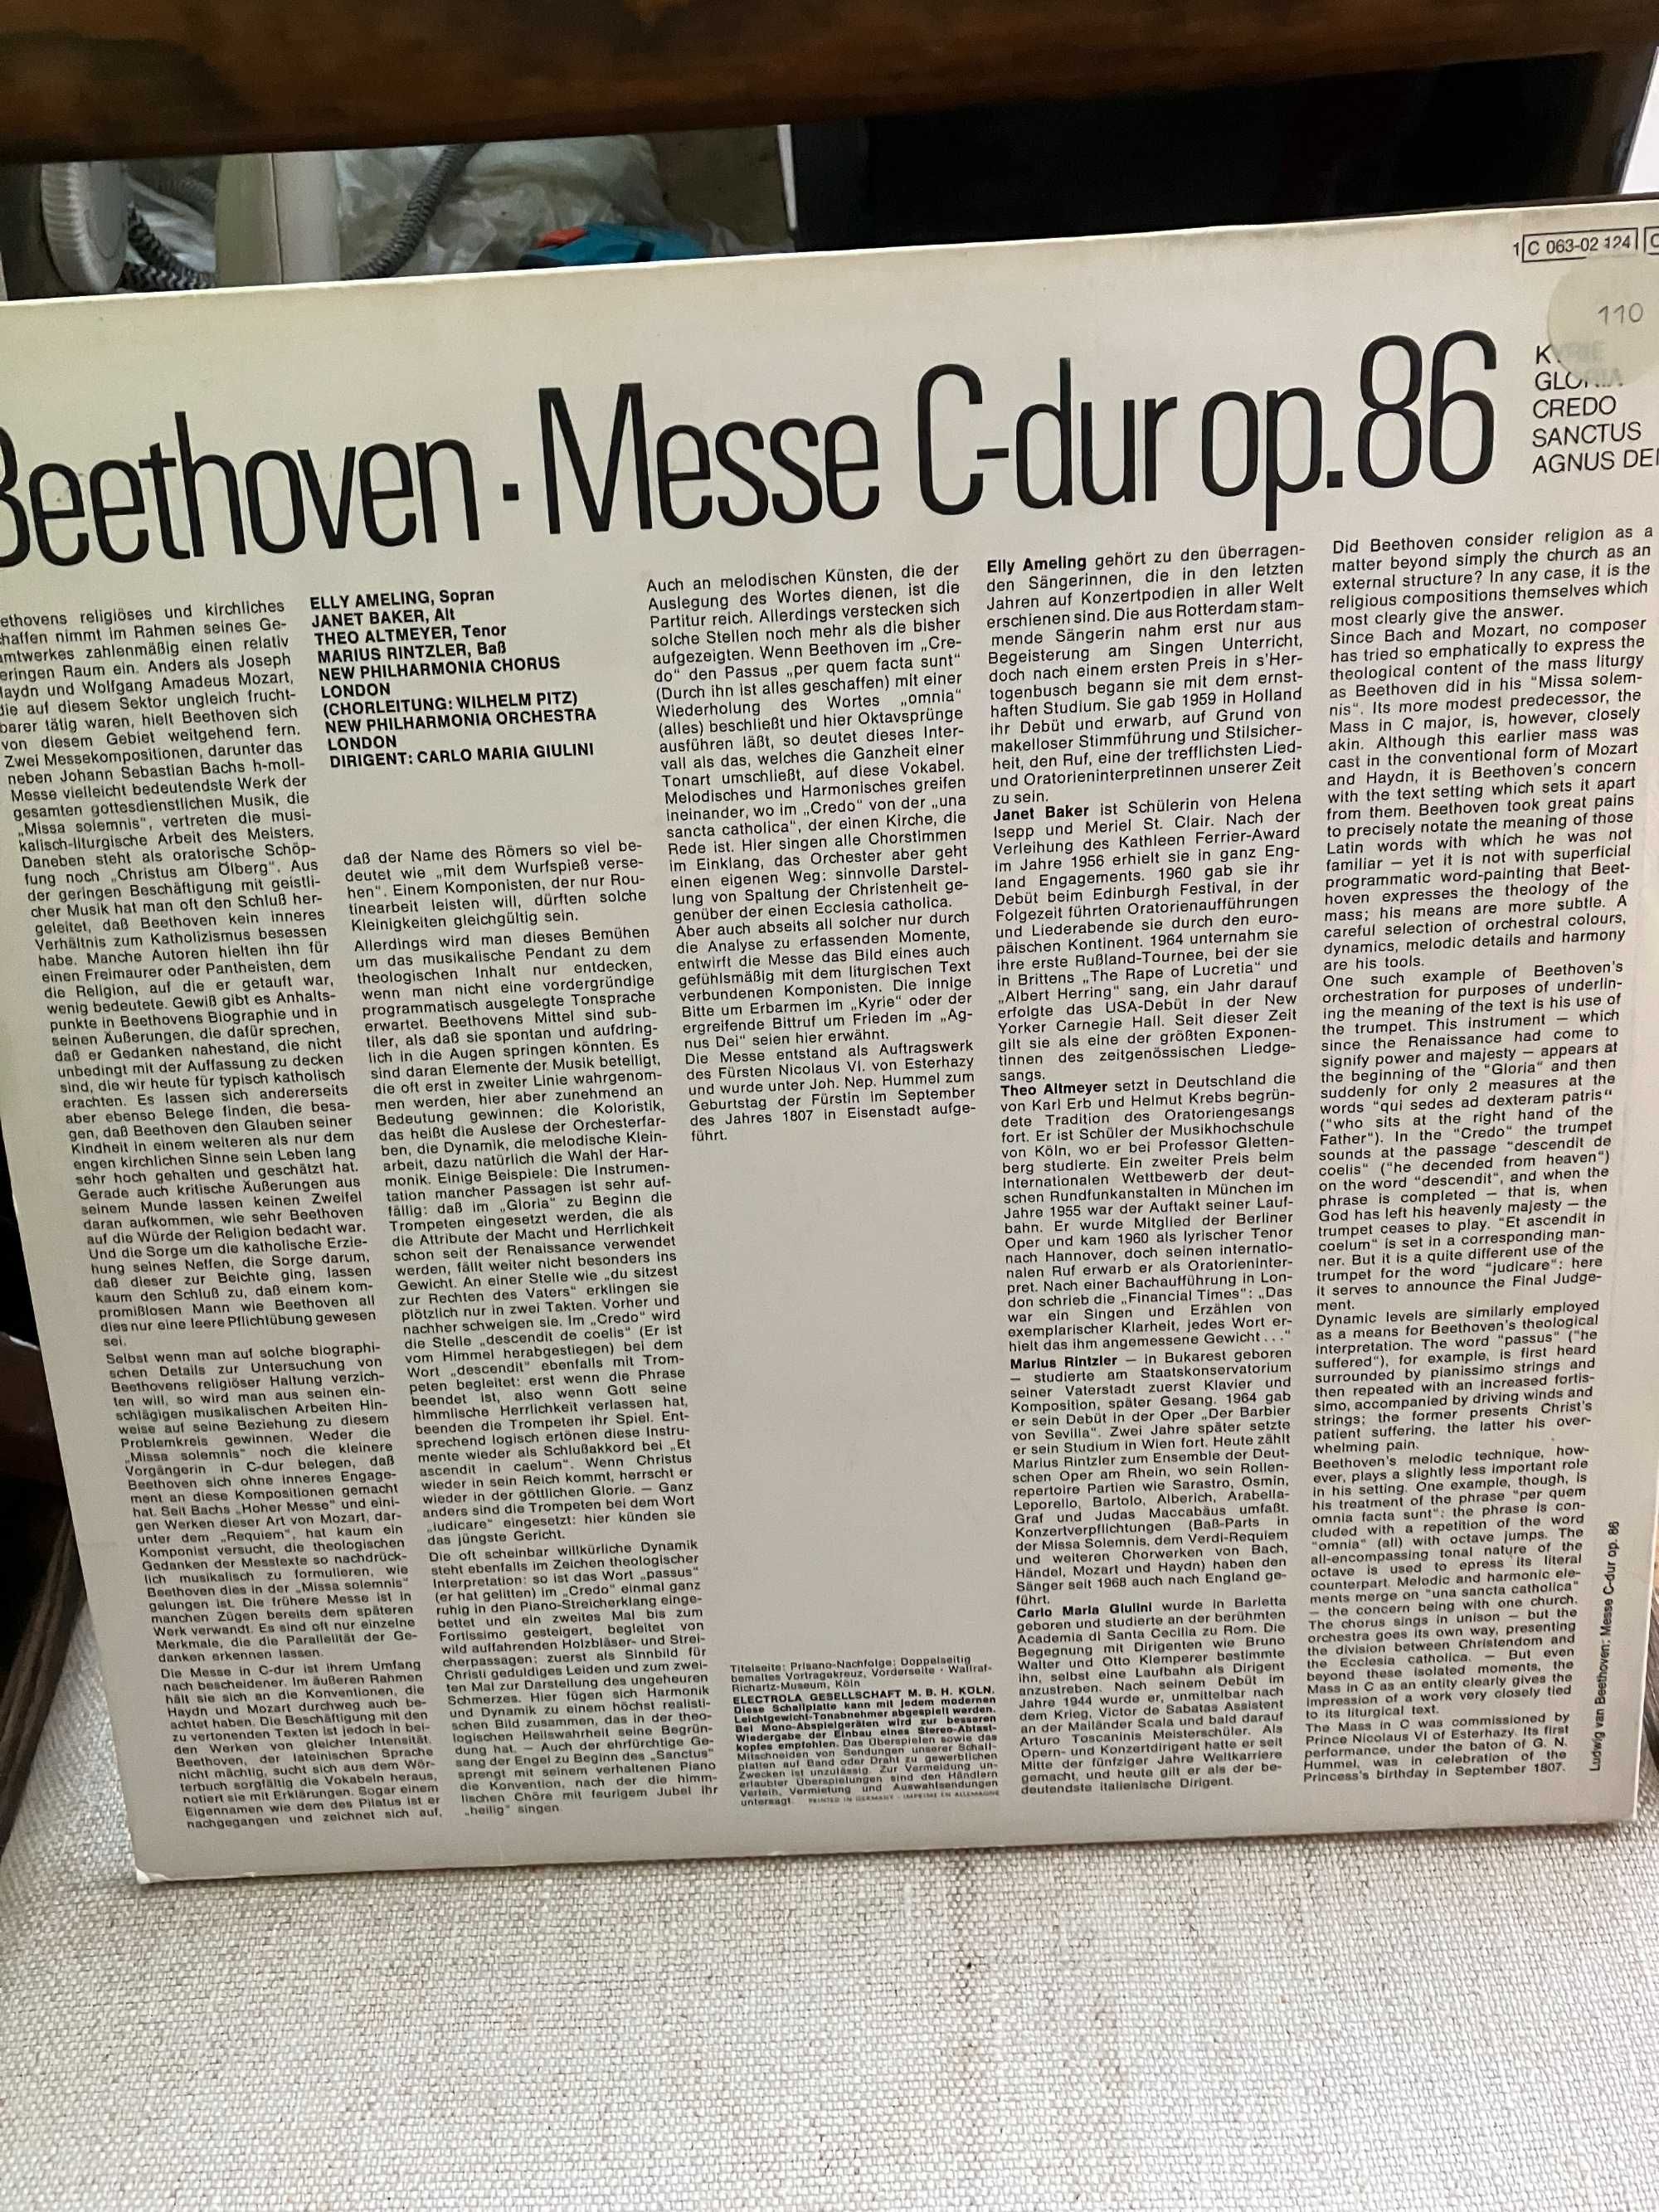 winyl Ludwig van  Beethoven  "  Messe C-Dur op.86 "  mint